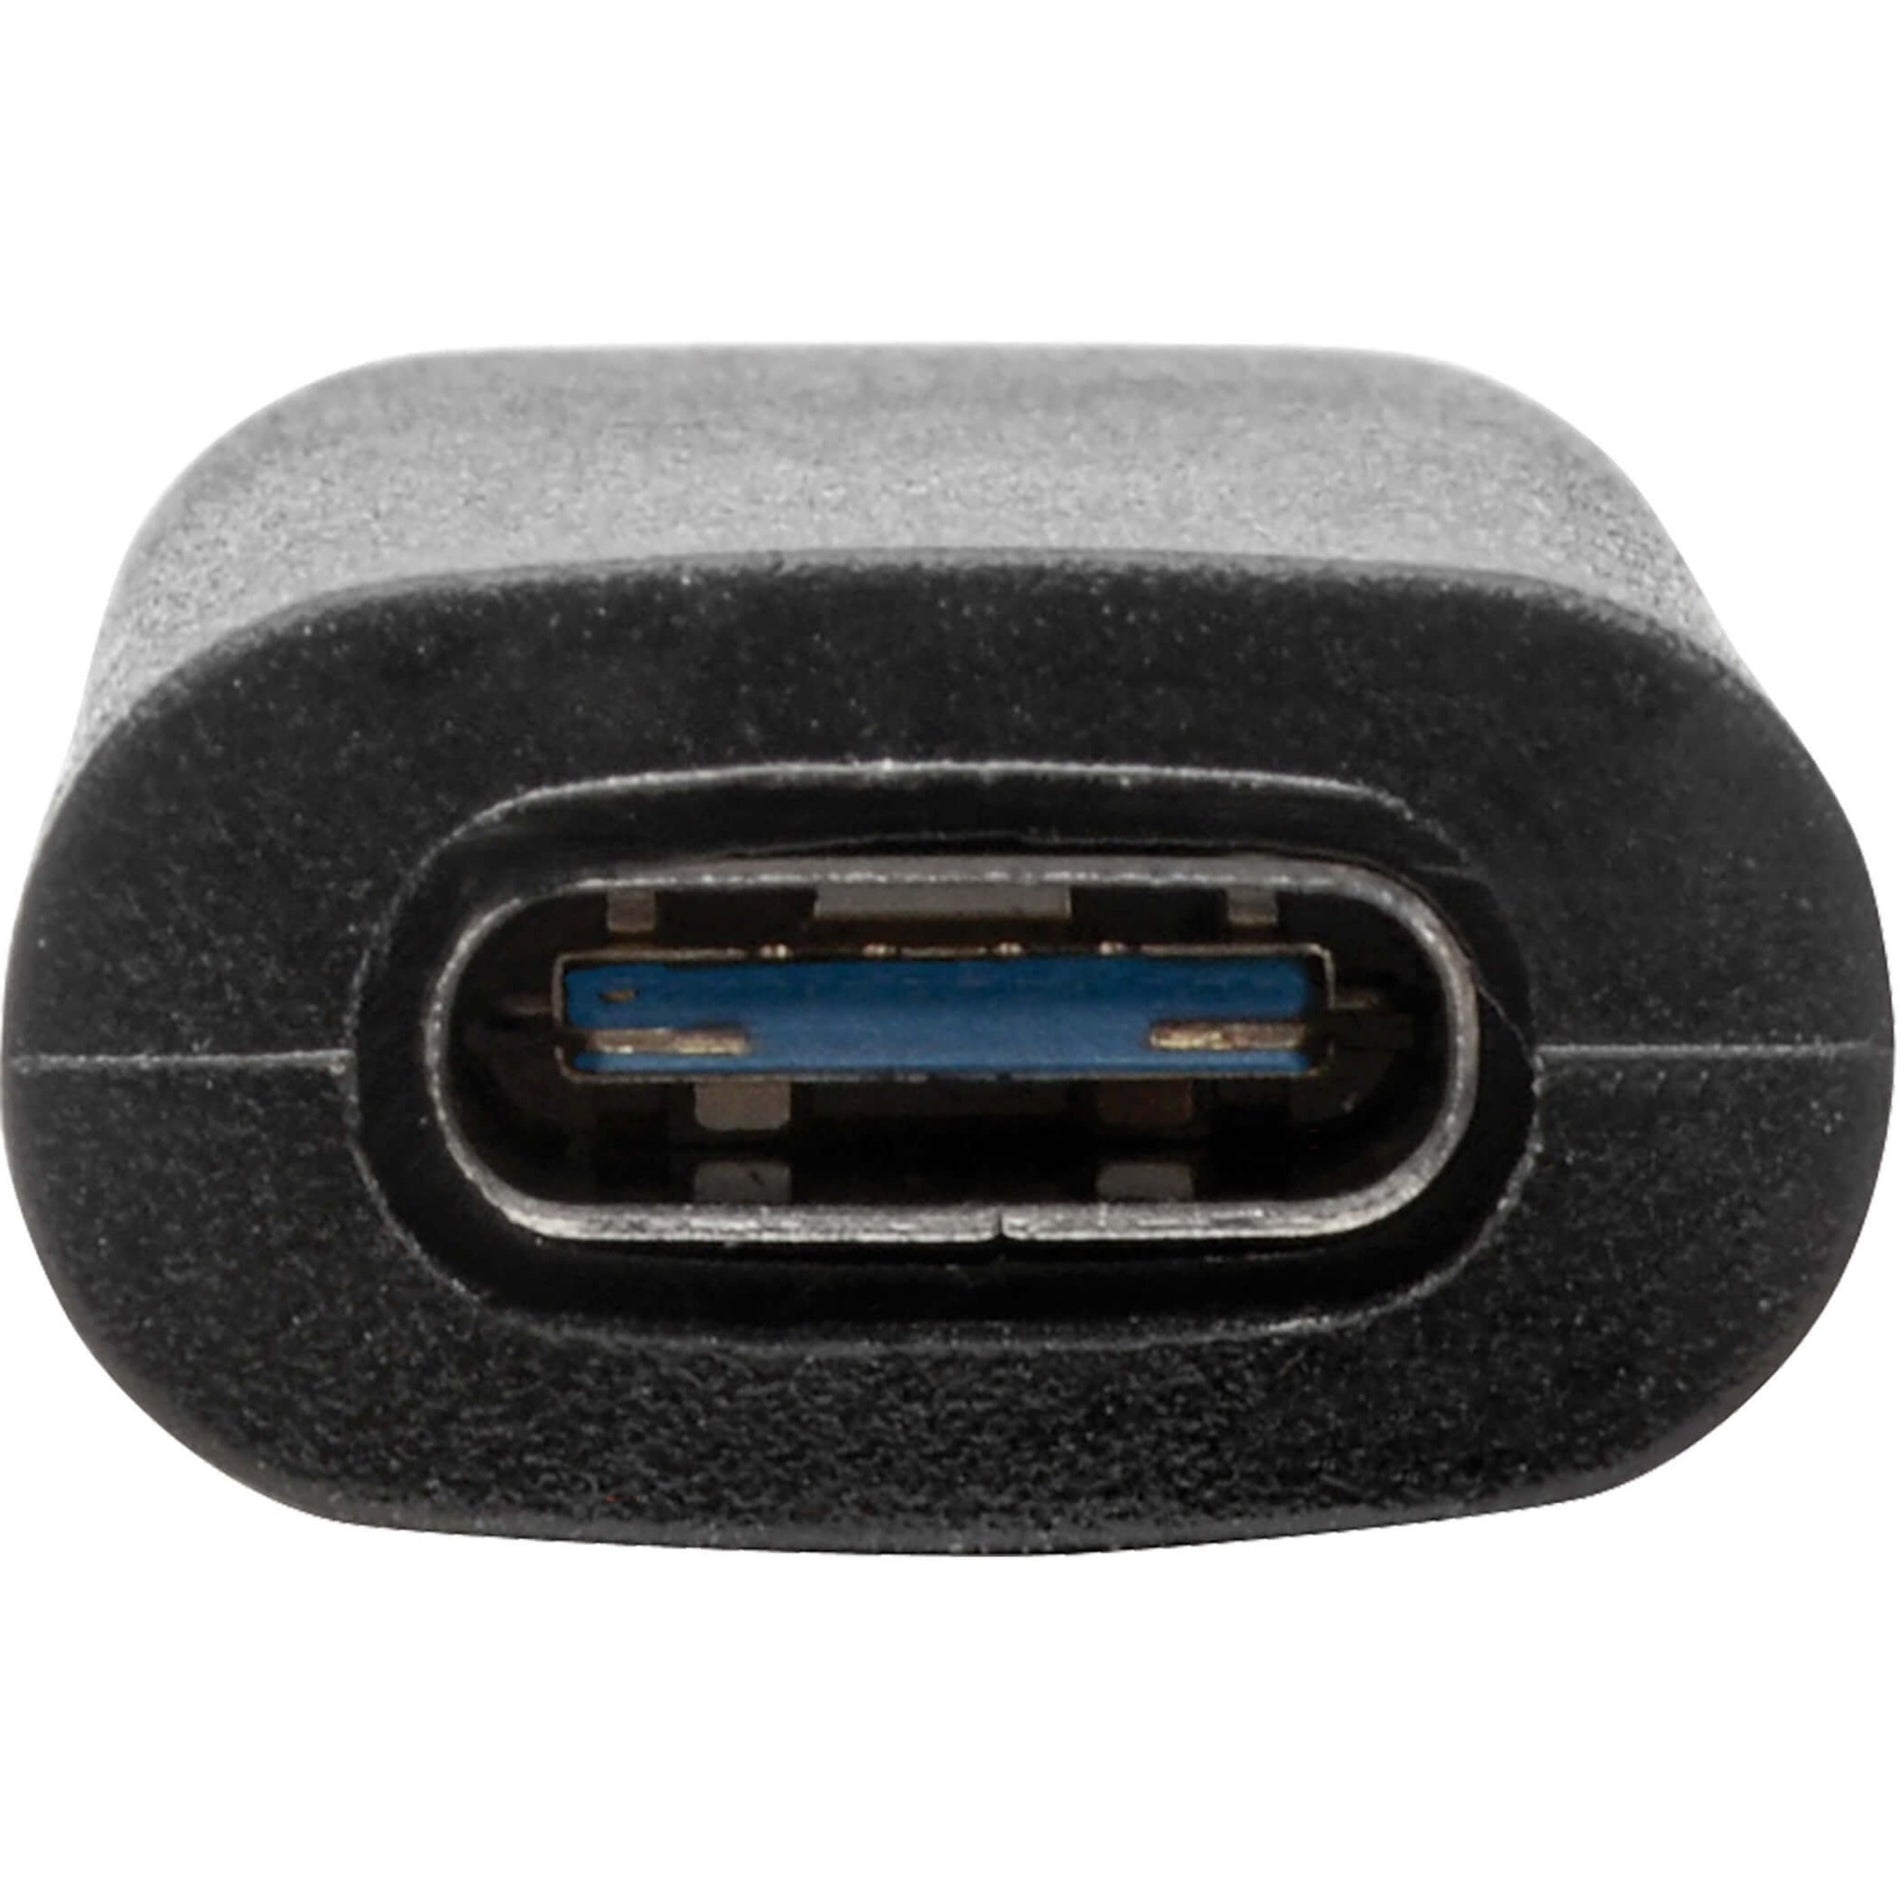 تريب لايت U329-000-10G محول USB-C إلى USB-A (أنثى/ذكر)، USB 3.2 جيل 2 (10 جيجابت في الثانية)، أسود